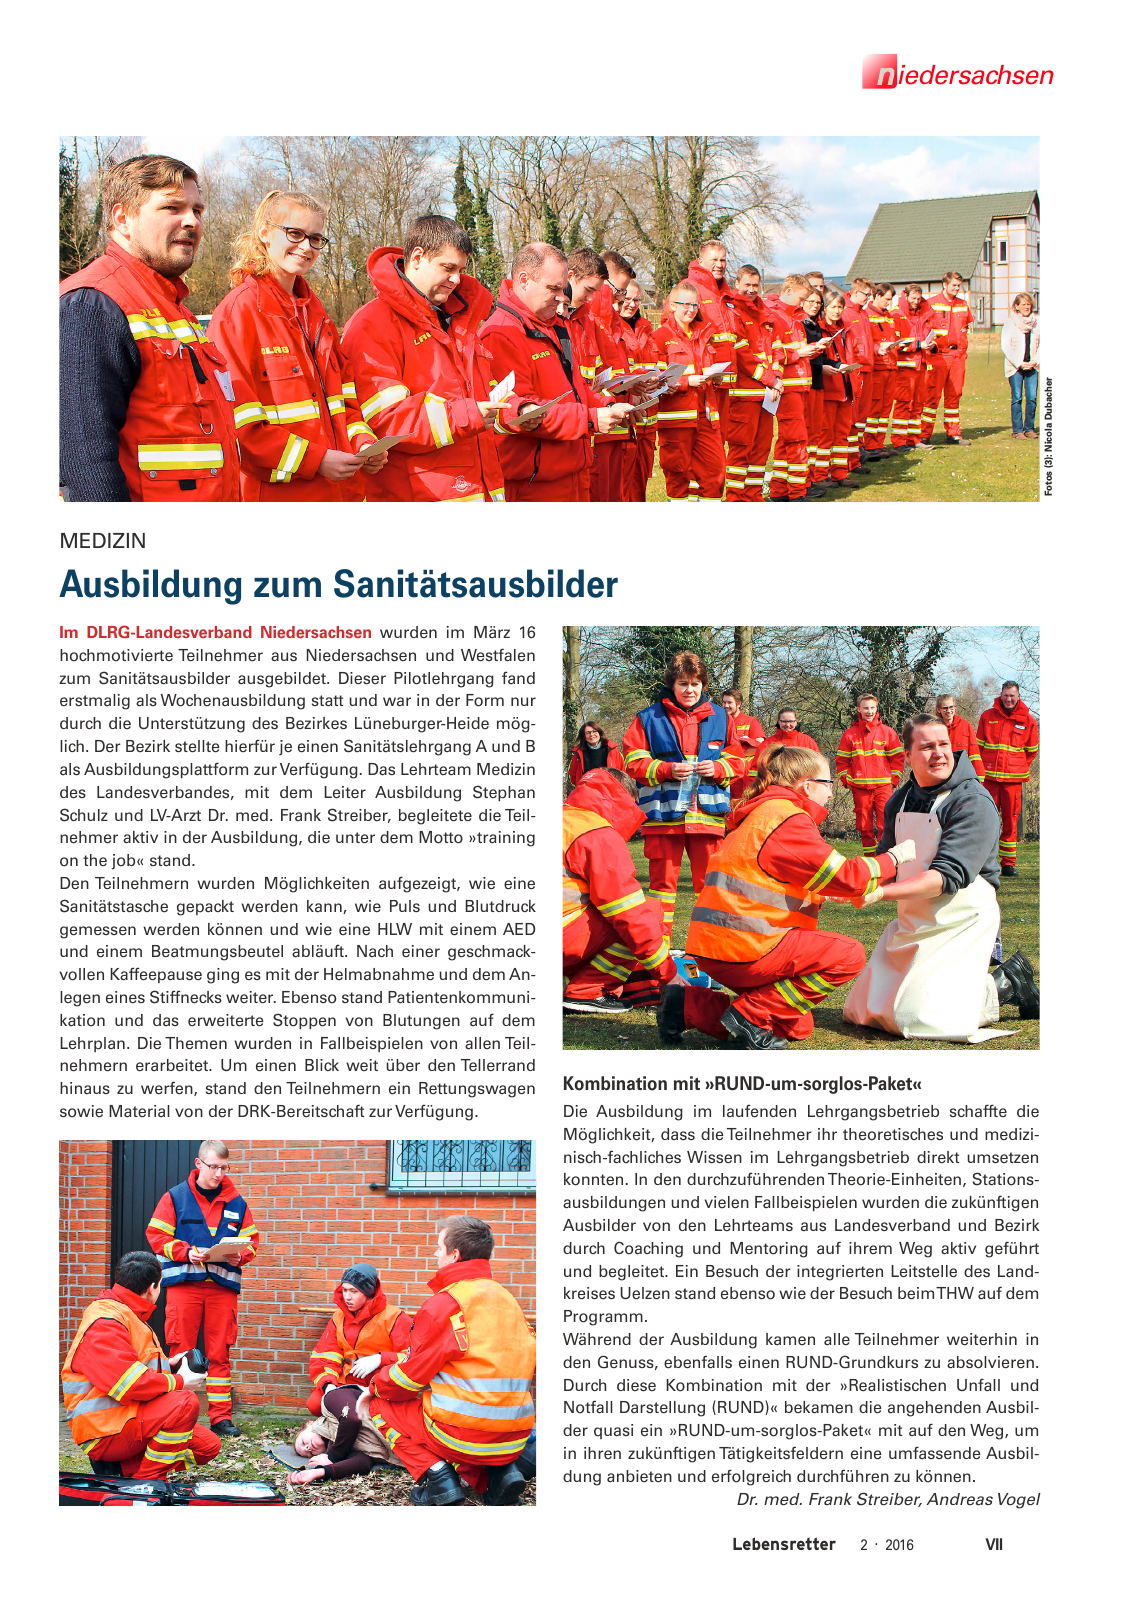 Vorschau Lebensretter 2/2016 - Regionalausgabe Niedersachsen Seite 9